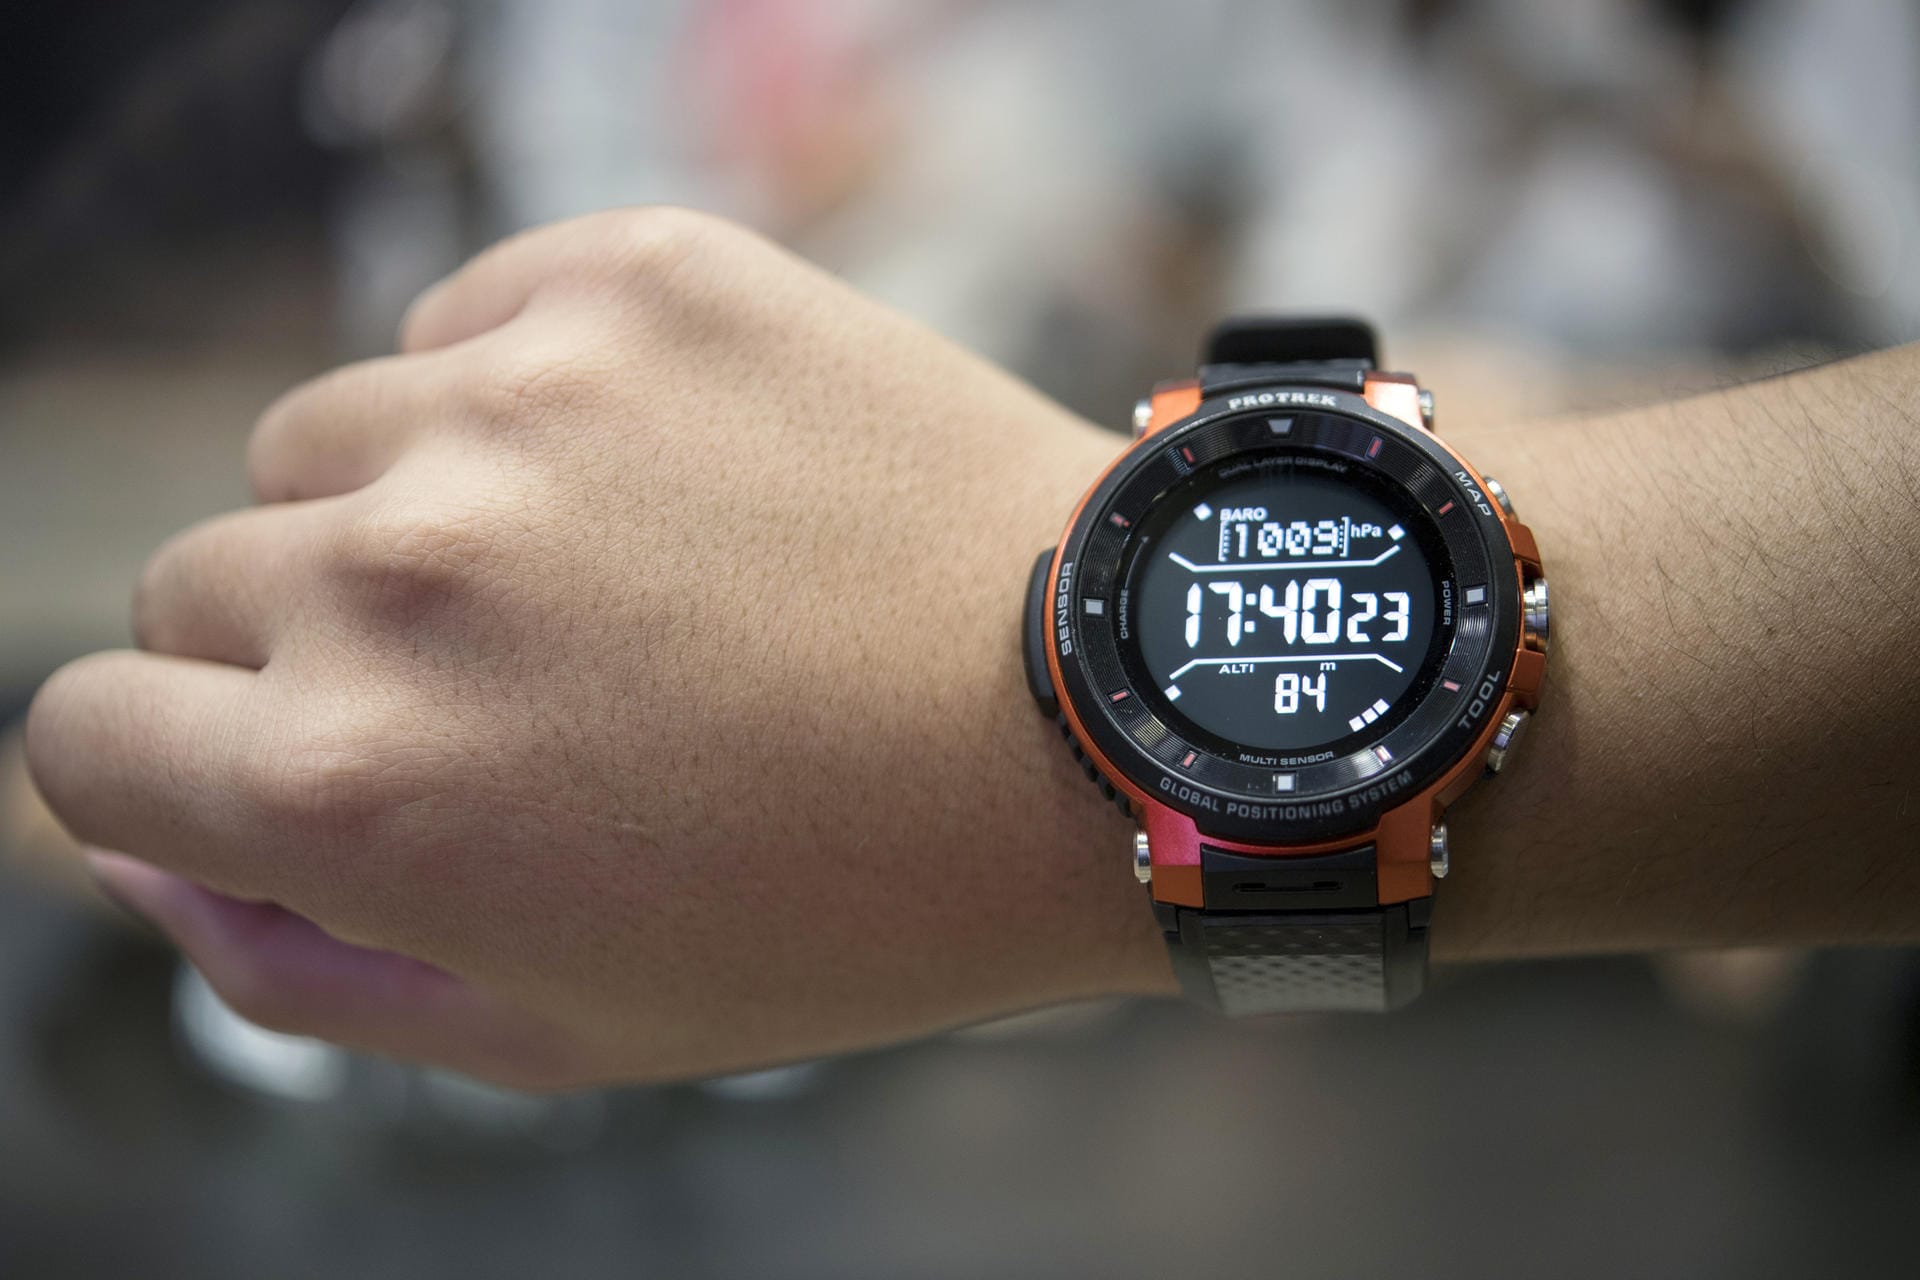 Für Outdoor-Ethusiasten gedacht: Die wasserdichte Smartwatch WSD-F30 von Casio.